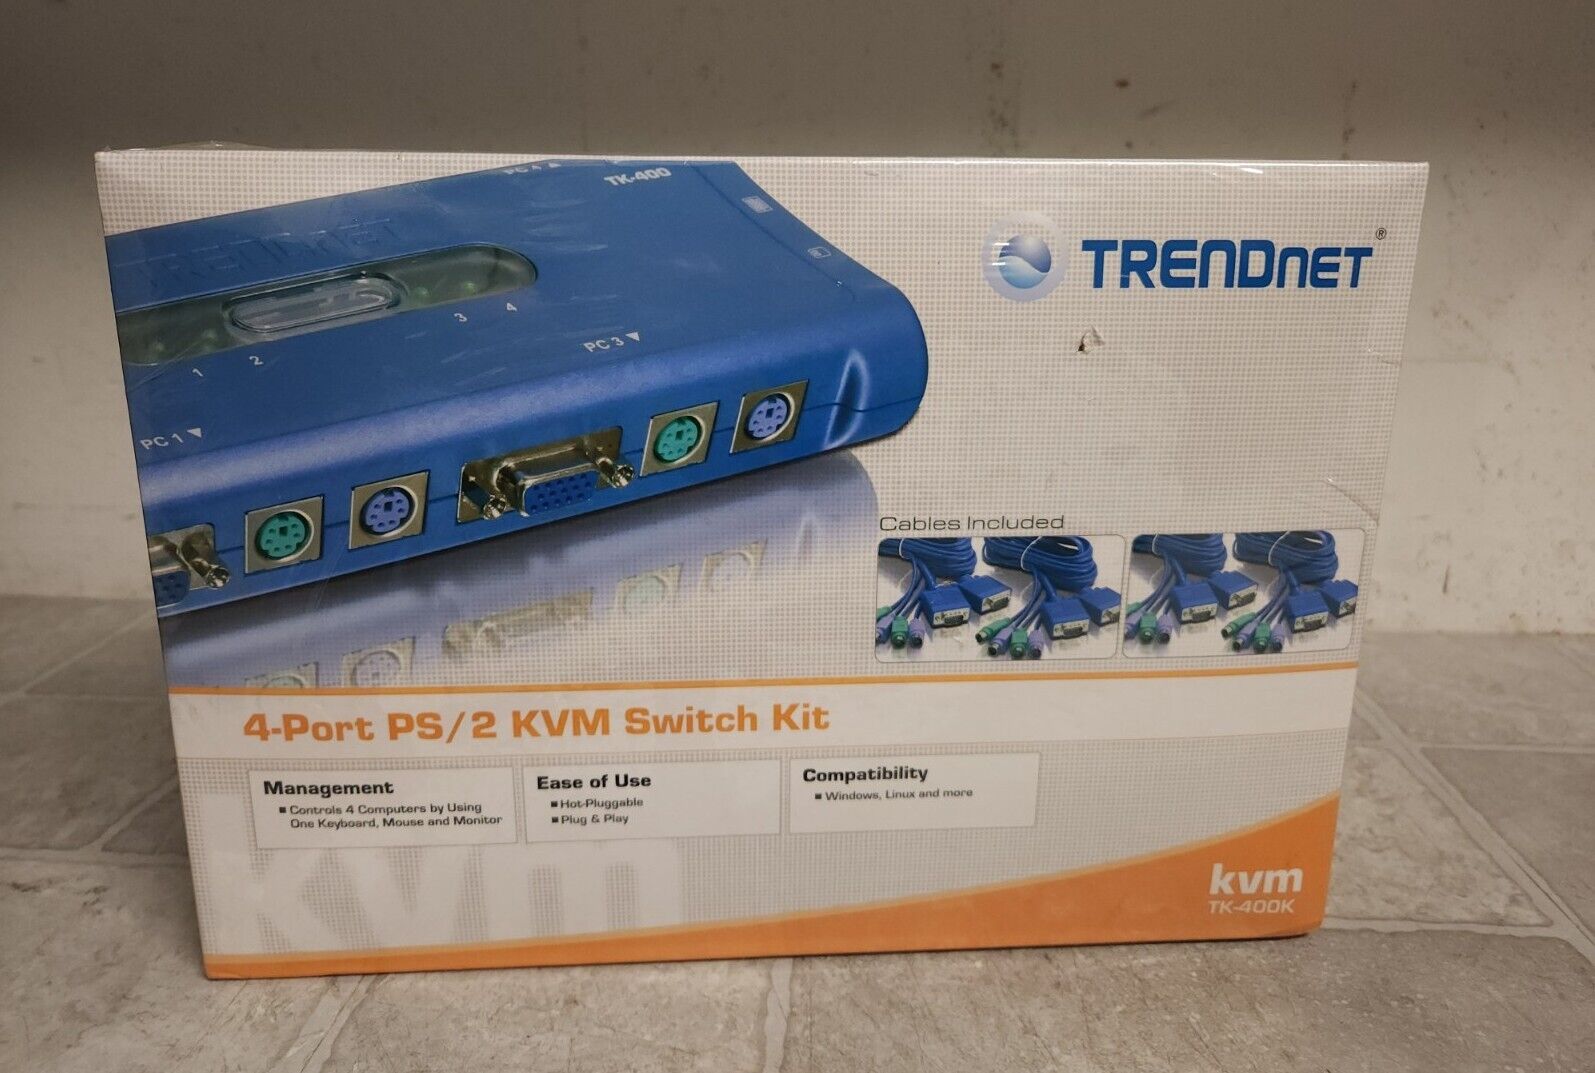 NEW TRENDnet TK-400K 4-Port PS/2 KVM Switch Kit 